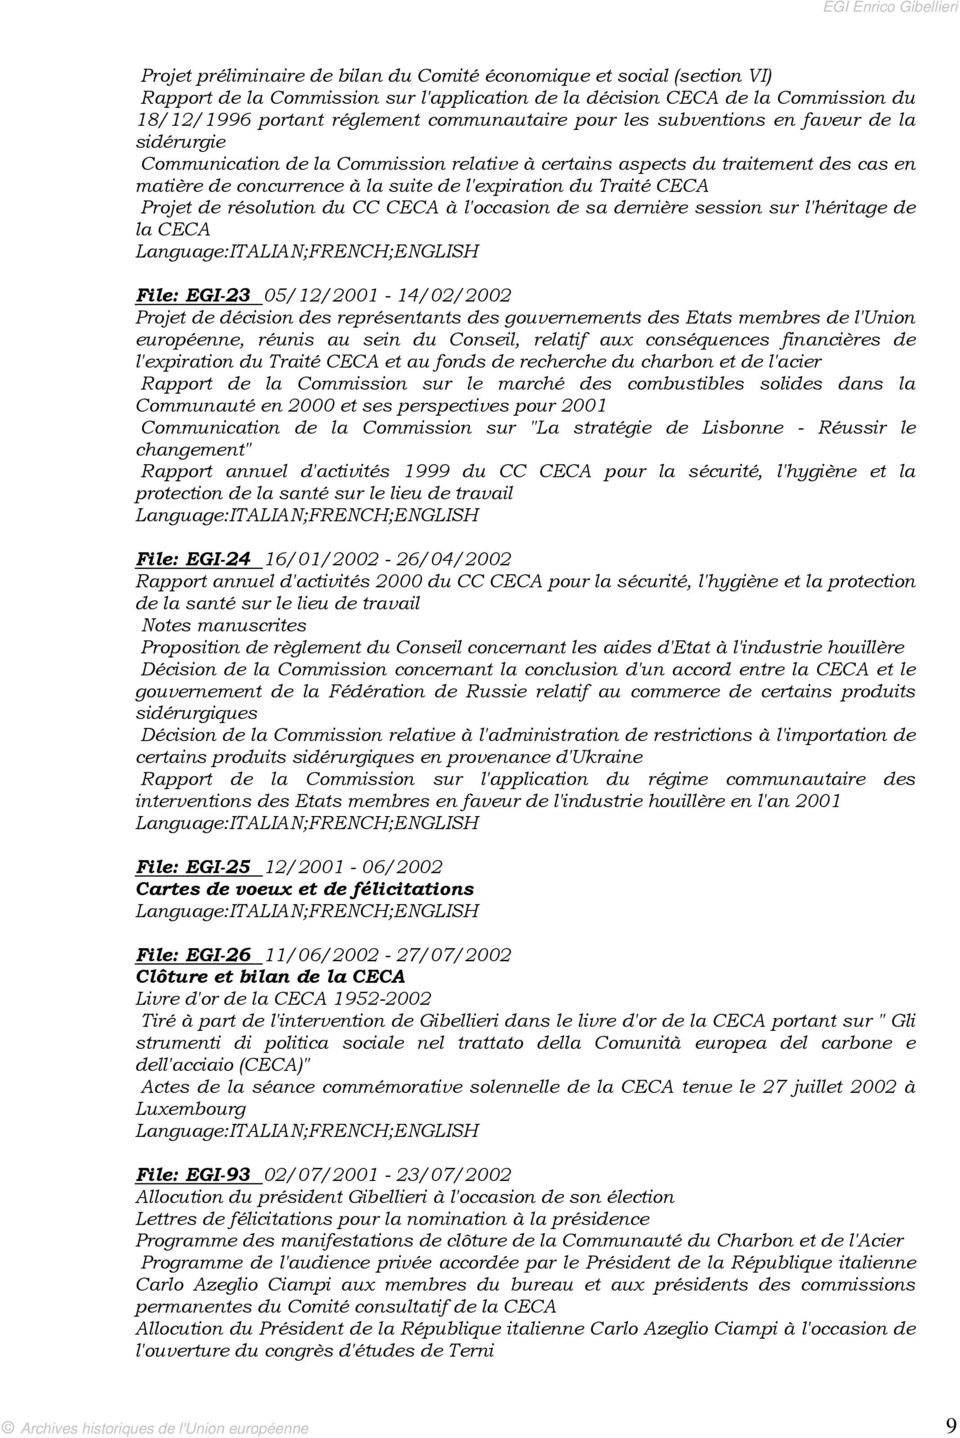 Projet de résolution du CC CECA à l'occasion de sa dernière session sur l'héritage de la CECA File: EGI-23 05/12/2001-14/02/2002 Projet de décision des représentants des gouvernements des Etats